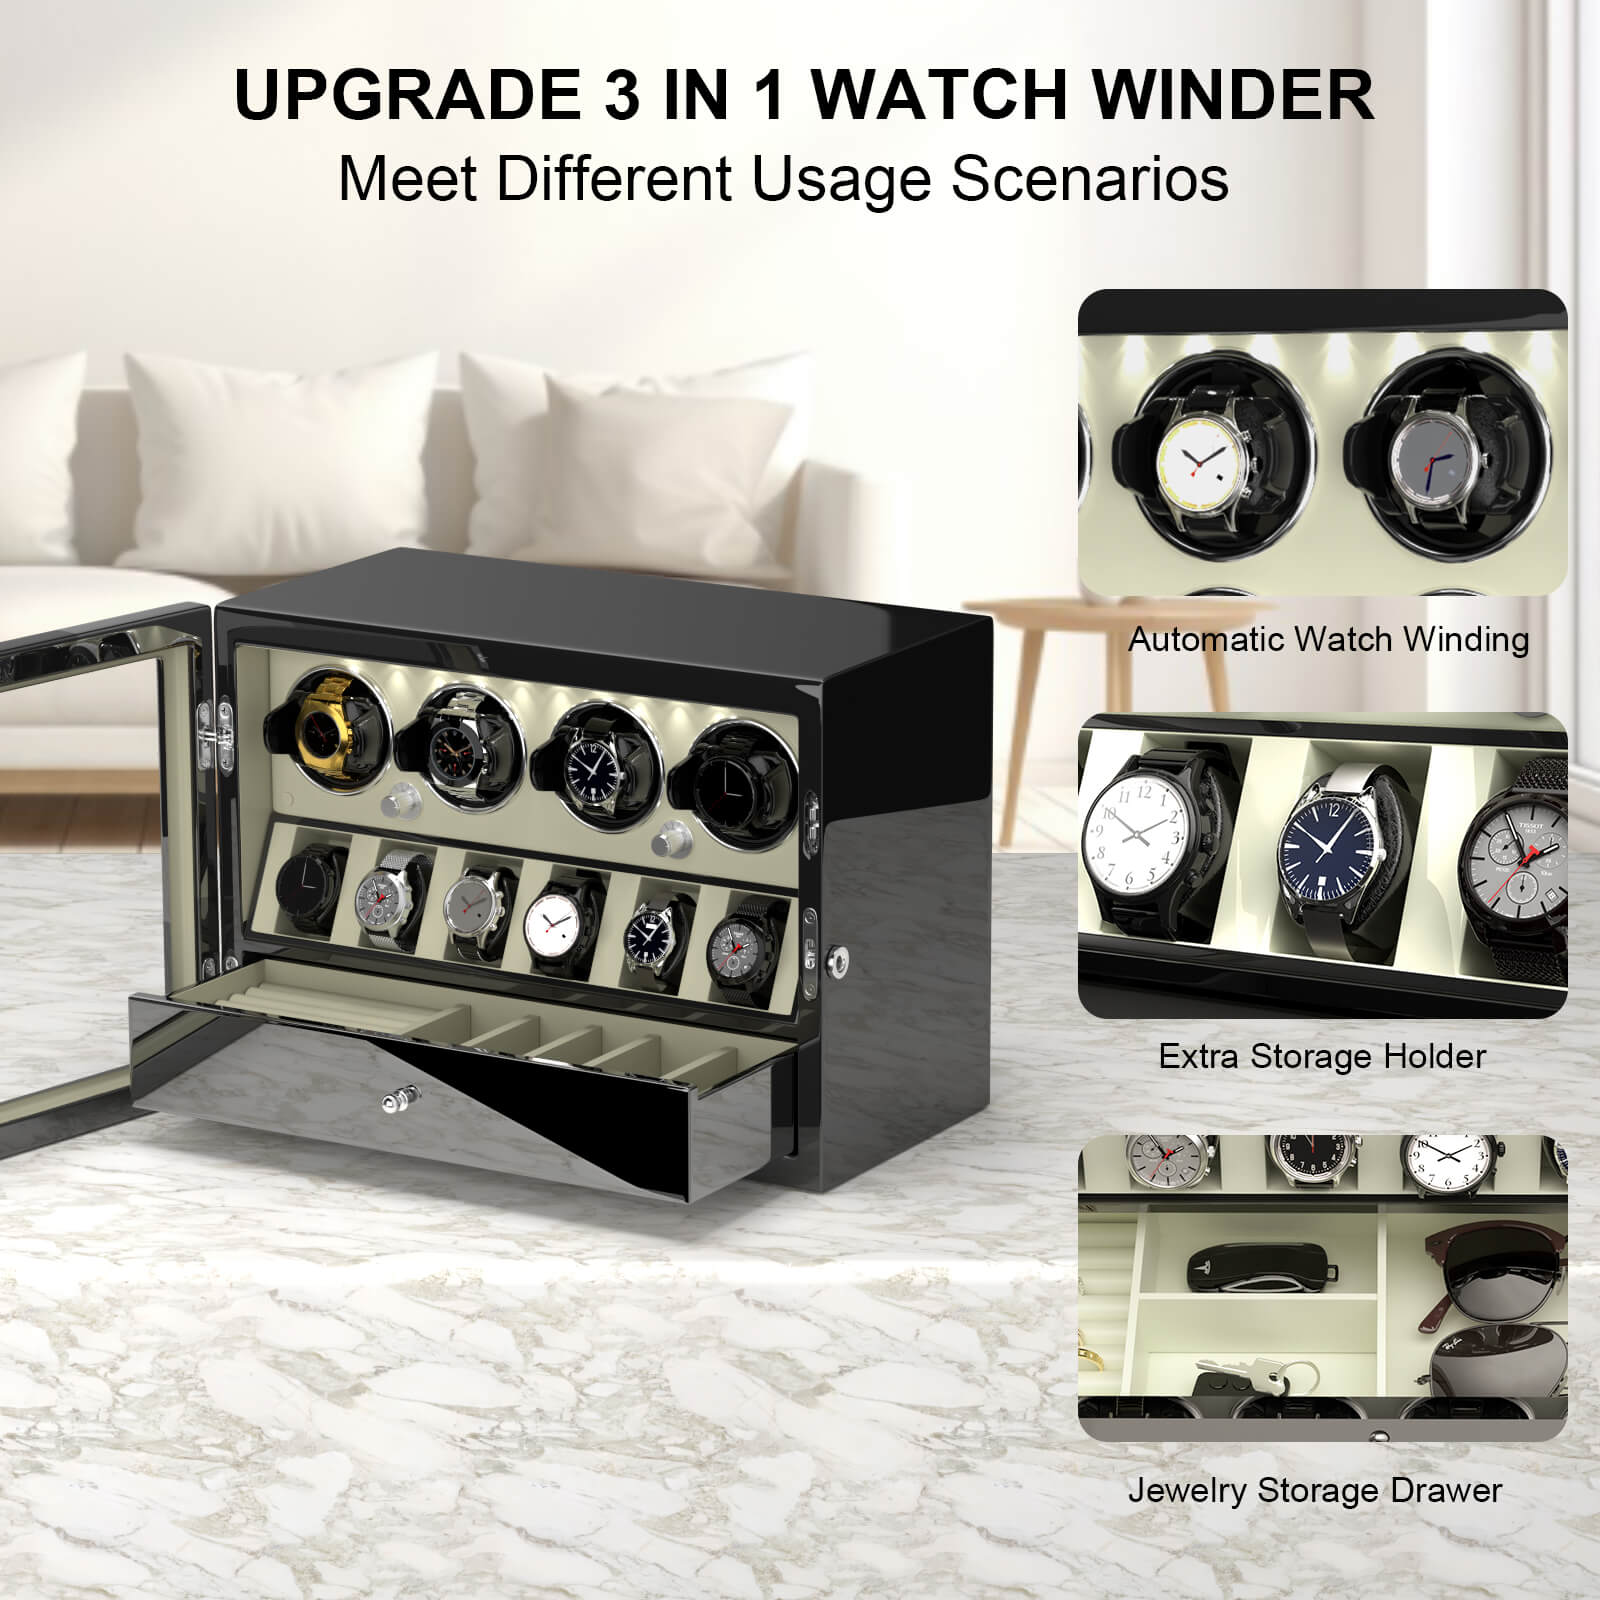 Remontoirs compacts pour 4 montres avec rangement pour 6 montres et éclairage intégré - Blanc